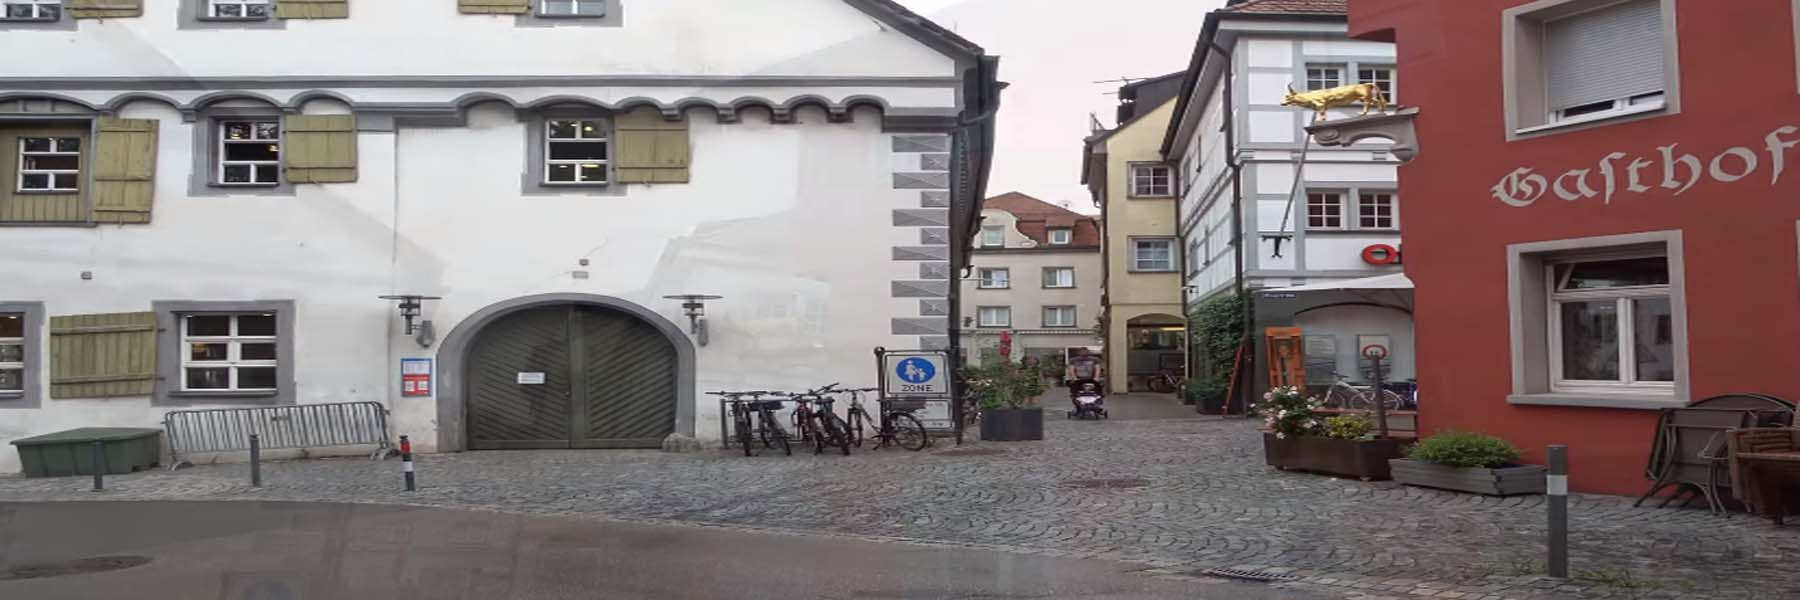 Historische Altstadt Ravensburg Immobilien kaufen und verkaufen